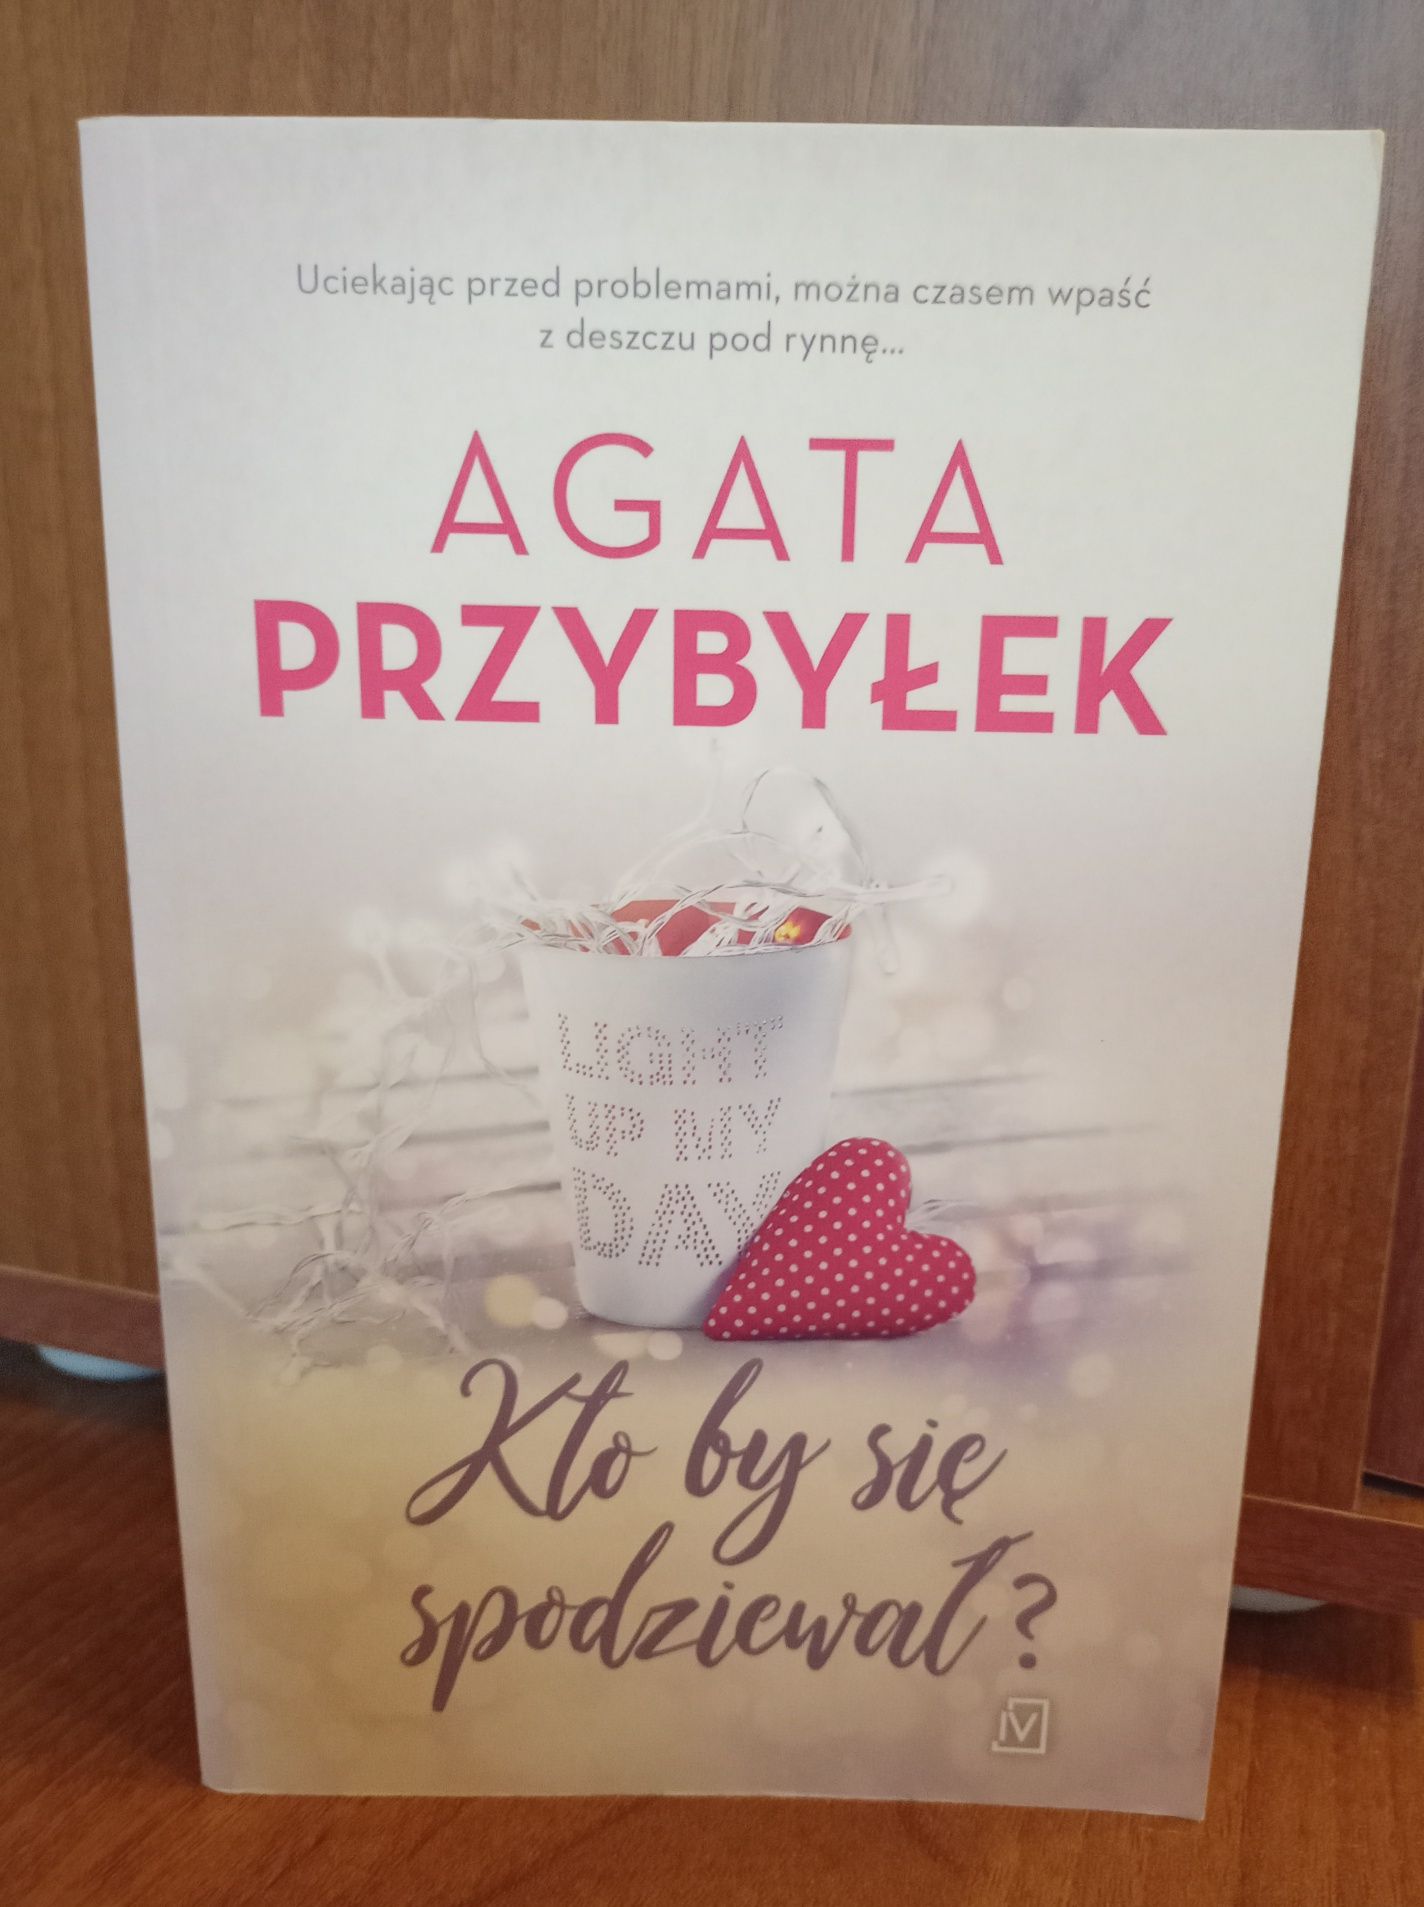 Książka "Kto by się spodziewał?" Agata Przybyłek